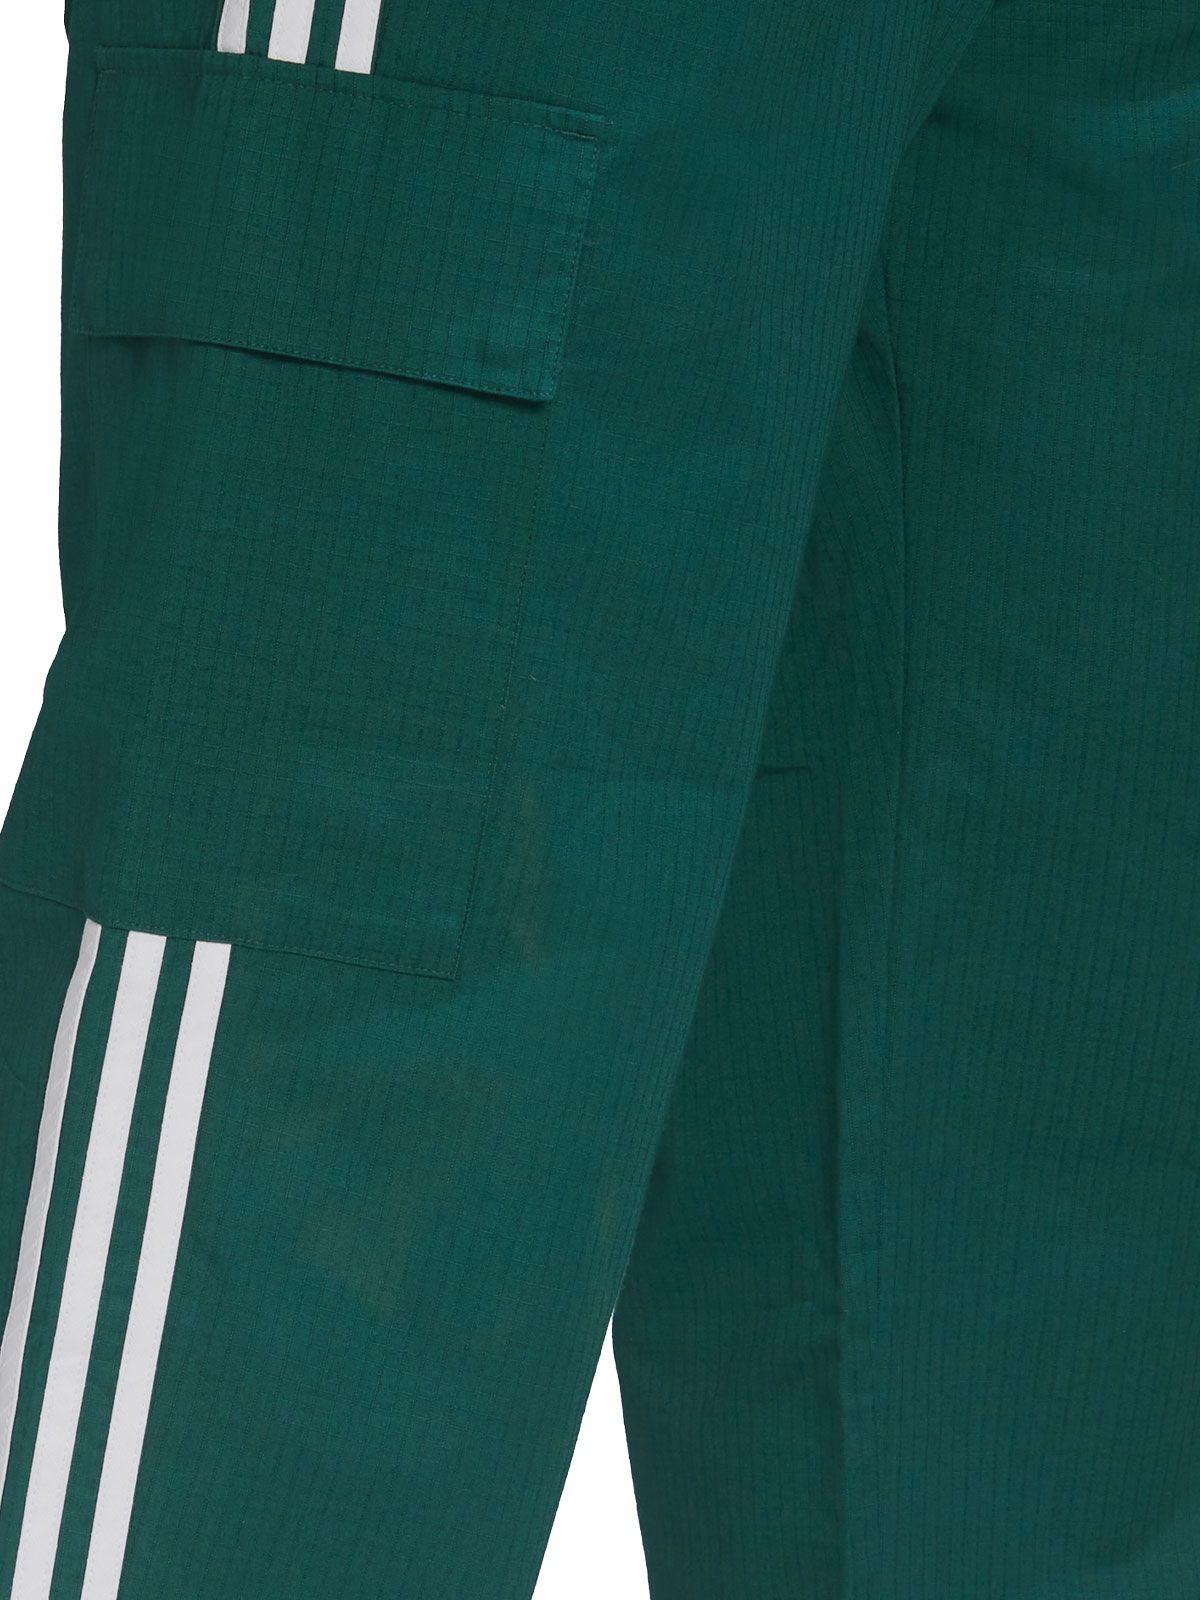 Pantalone Adidas Original Cargo Verde HB9474